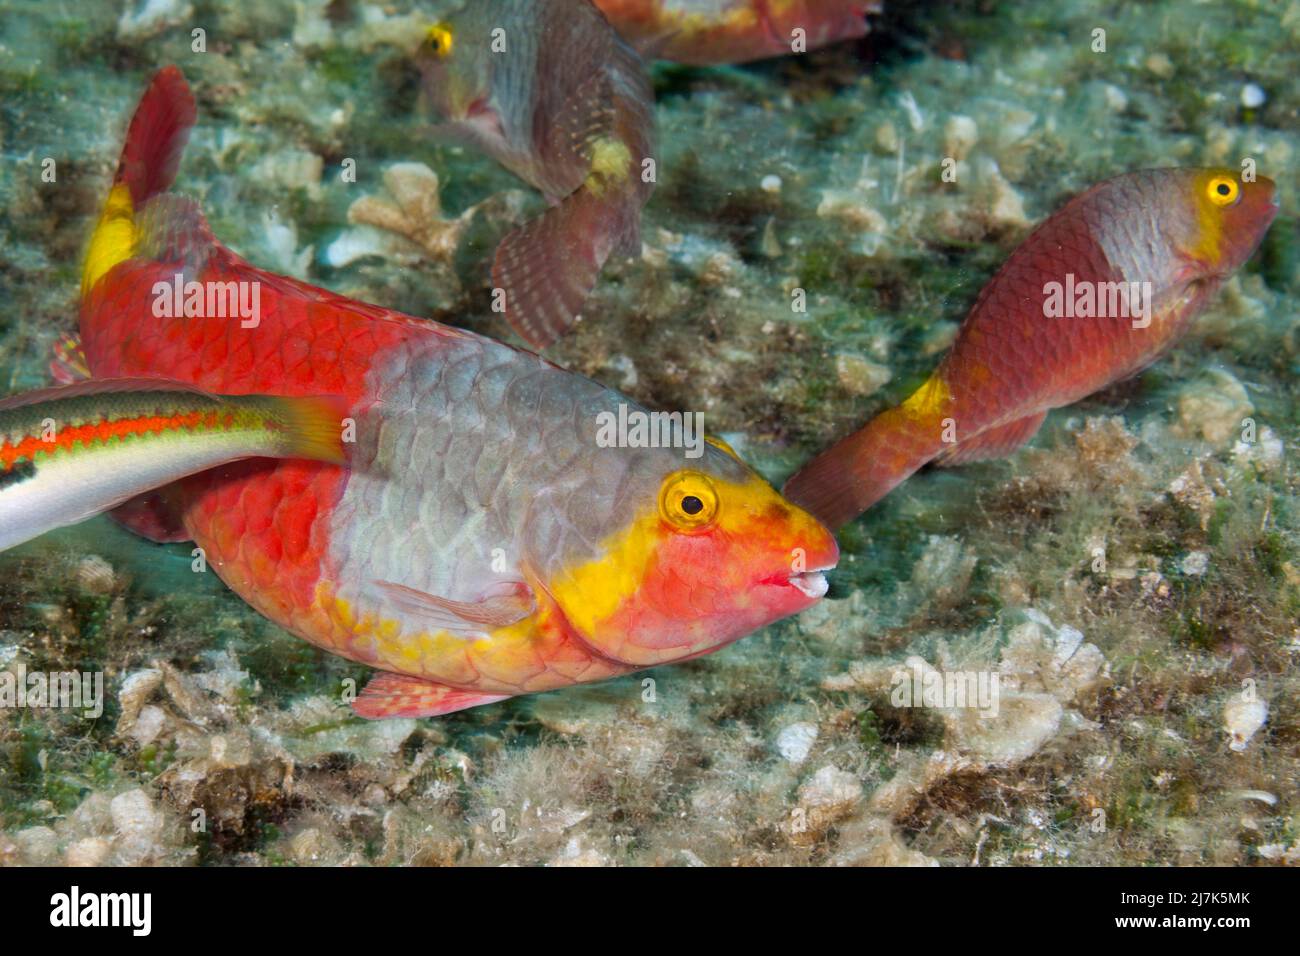 Female Mediterranean Parrotfish, Sparisoma cretense, Vis Island, Mediterranean Sea, Croatia Stock Photo